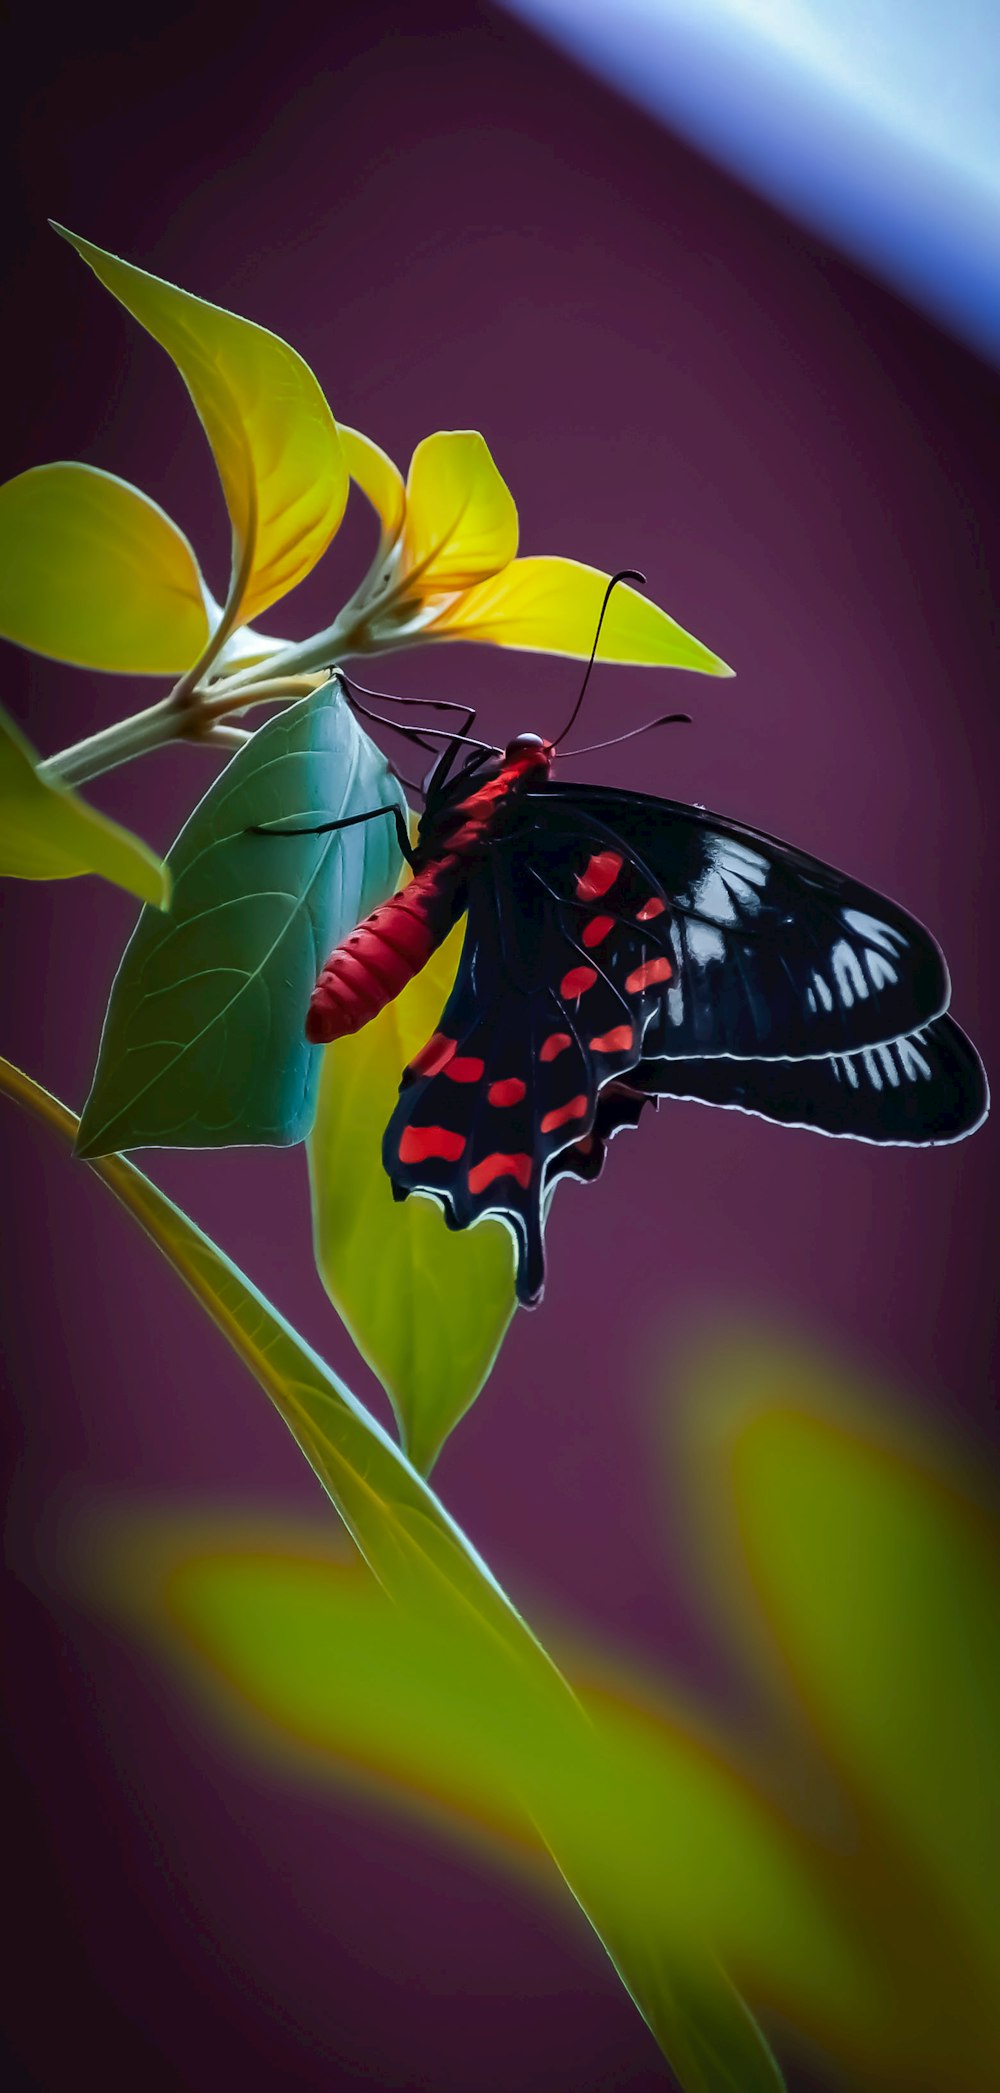 borboleta preta branca e vermelha empoleirada na flor amarela